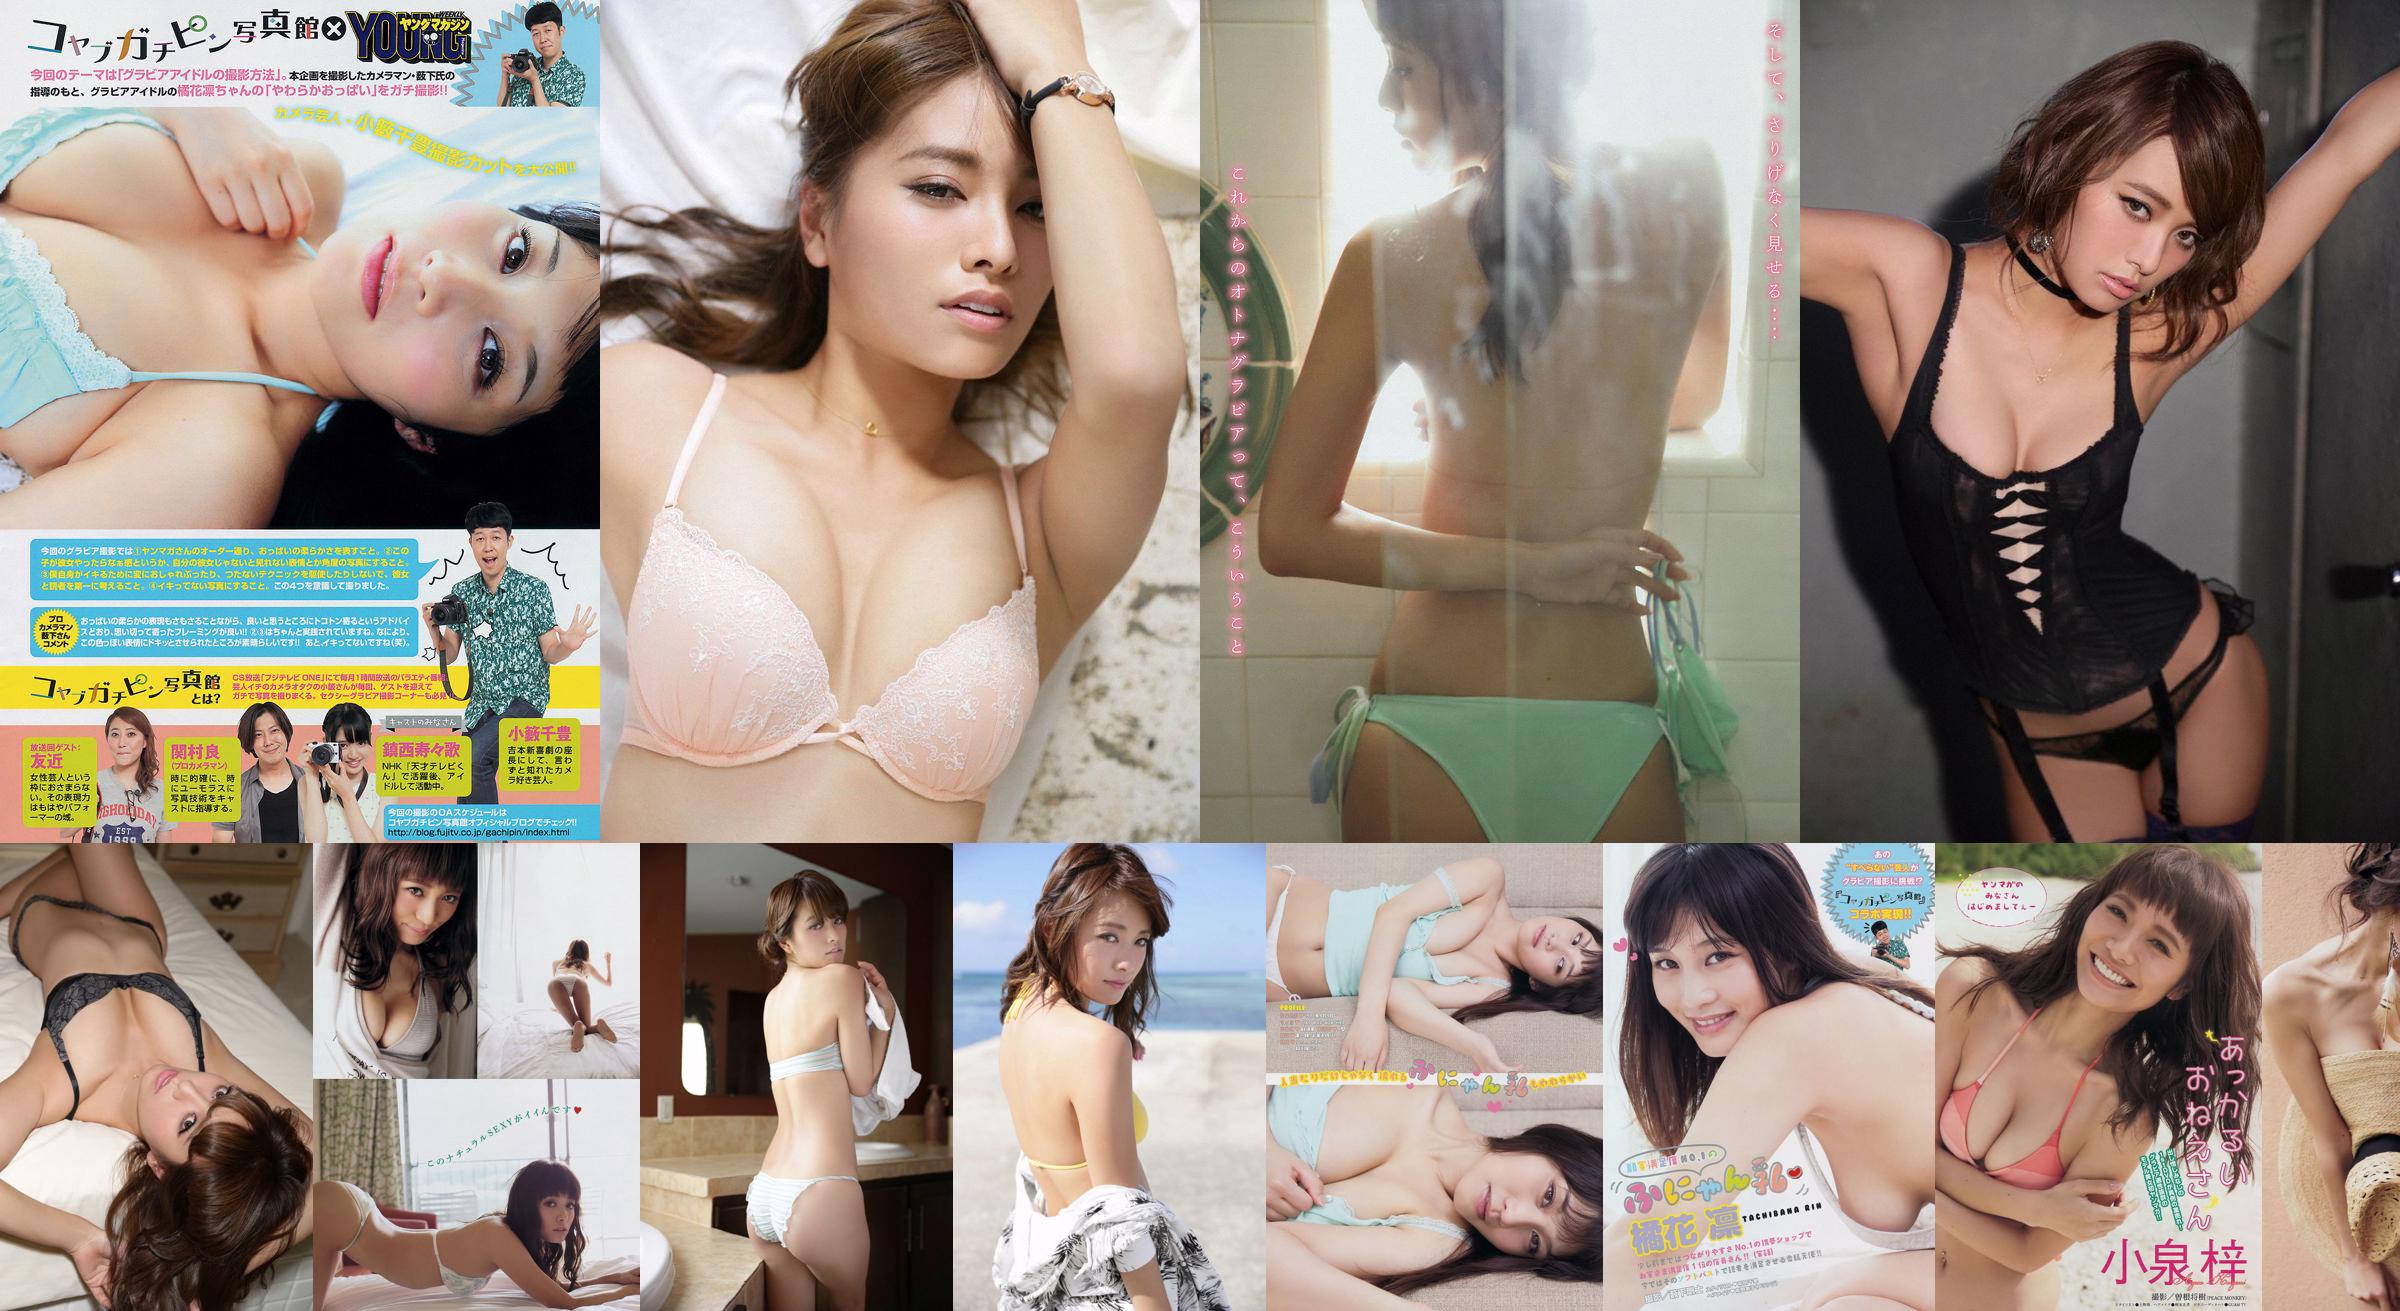 [Young Magazine] Azusa Koizumi Tachibana Rin 2014 No.43 Photo Magazine No.a53e5b Pagina 3